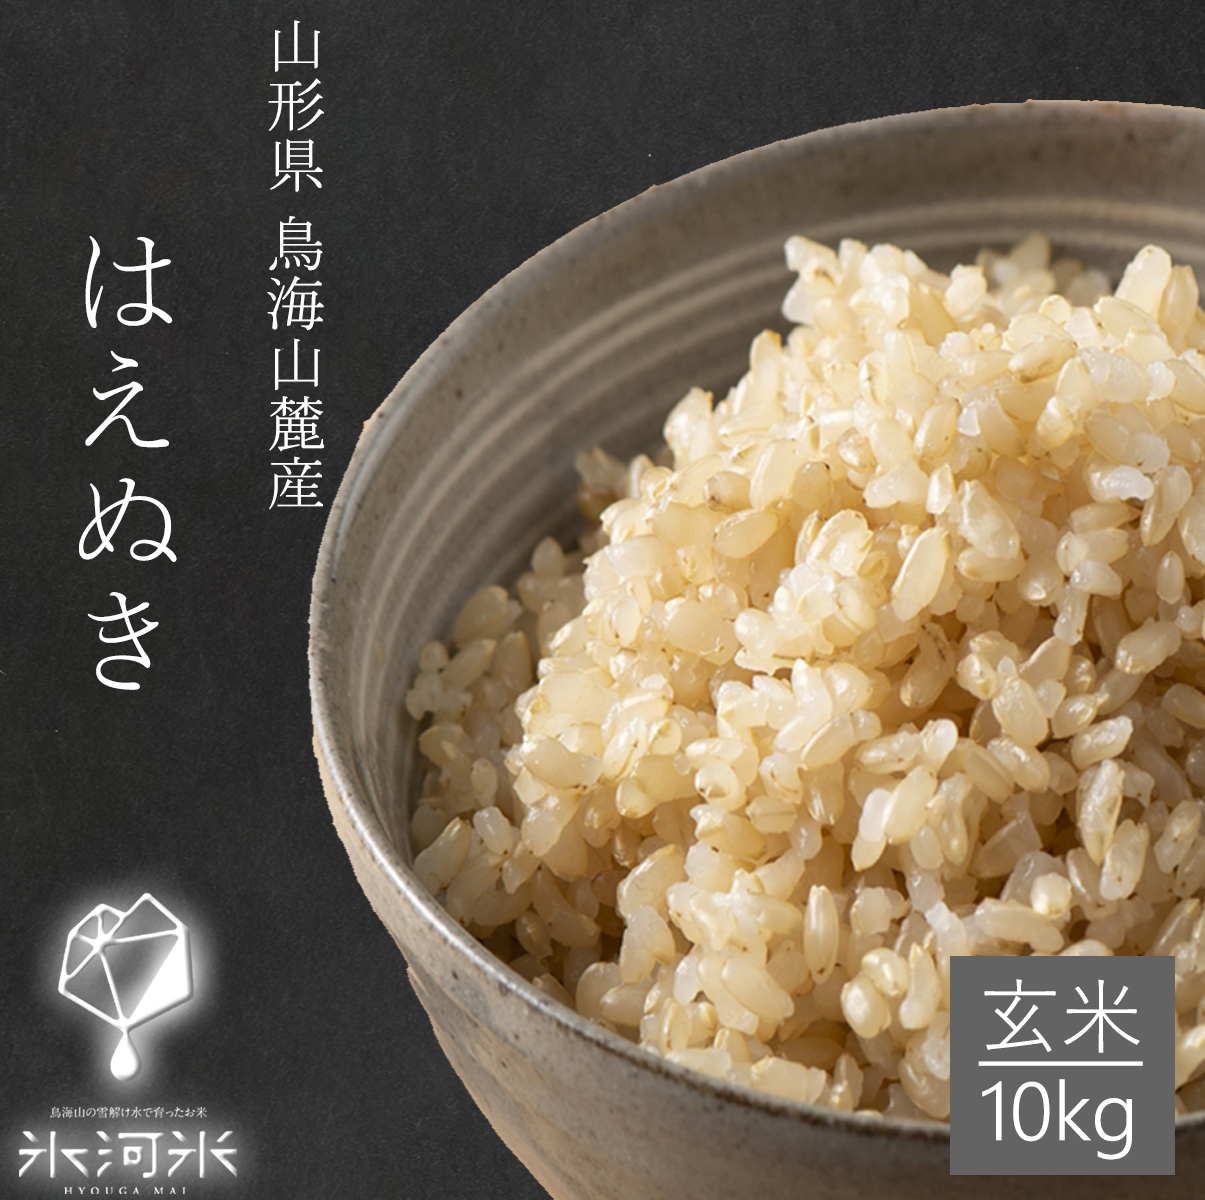 【楽天市場】米 はえぬき 玄米 30kg 精米・送料無料 安い 山形県産 